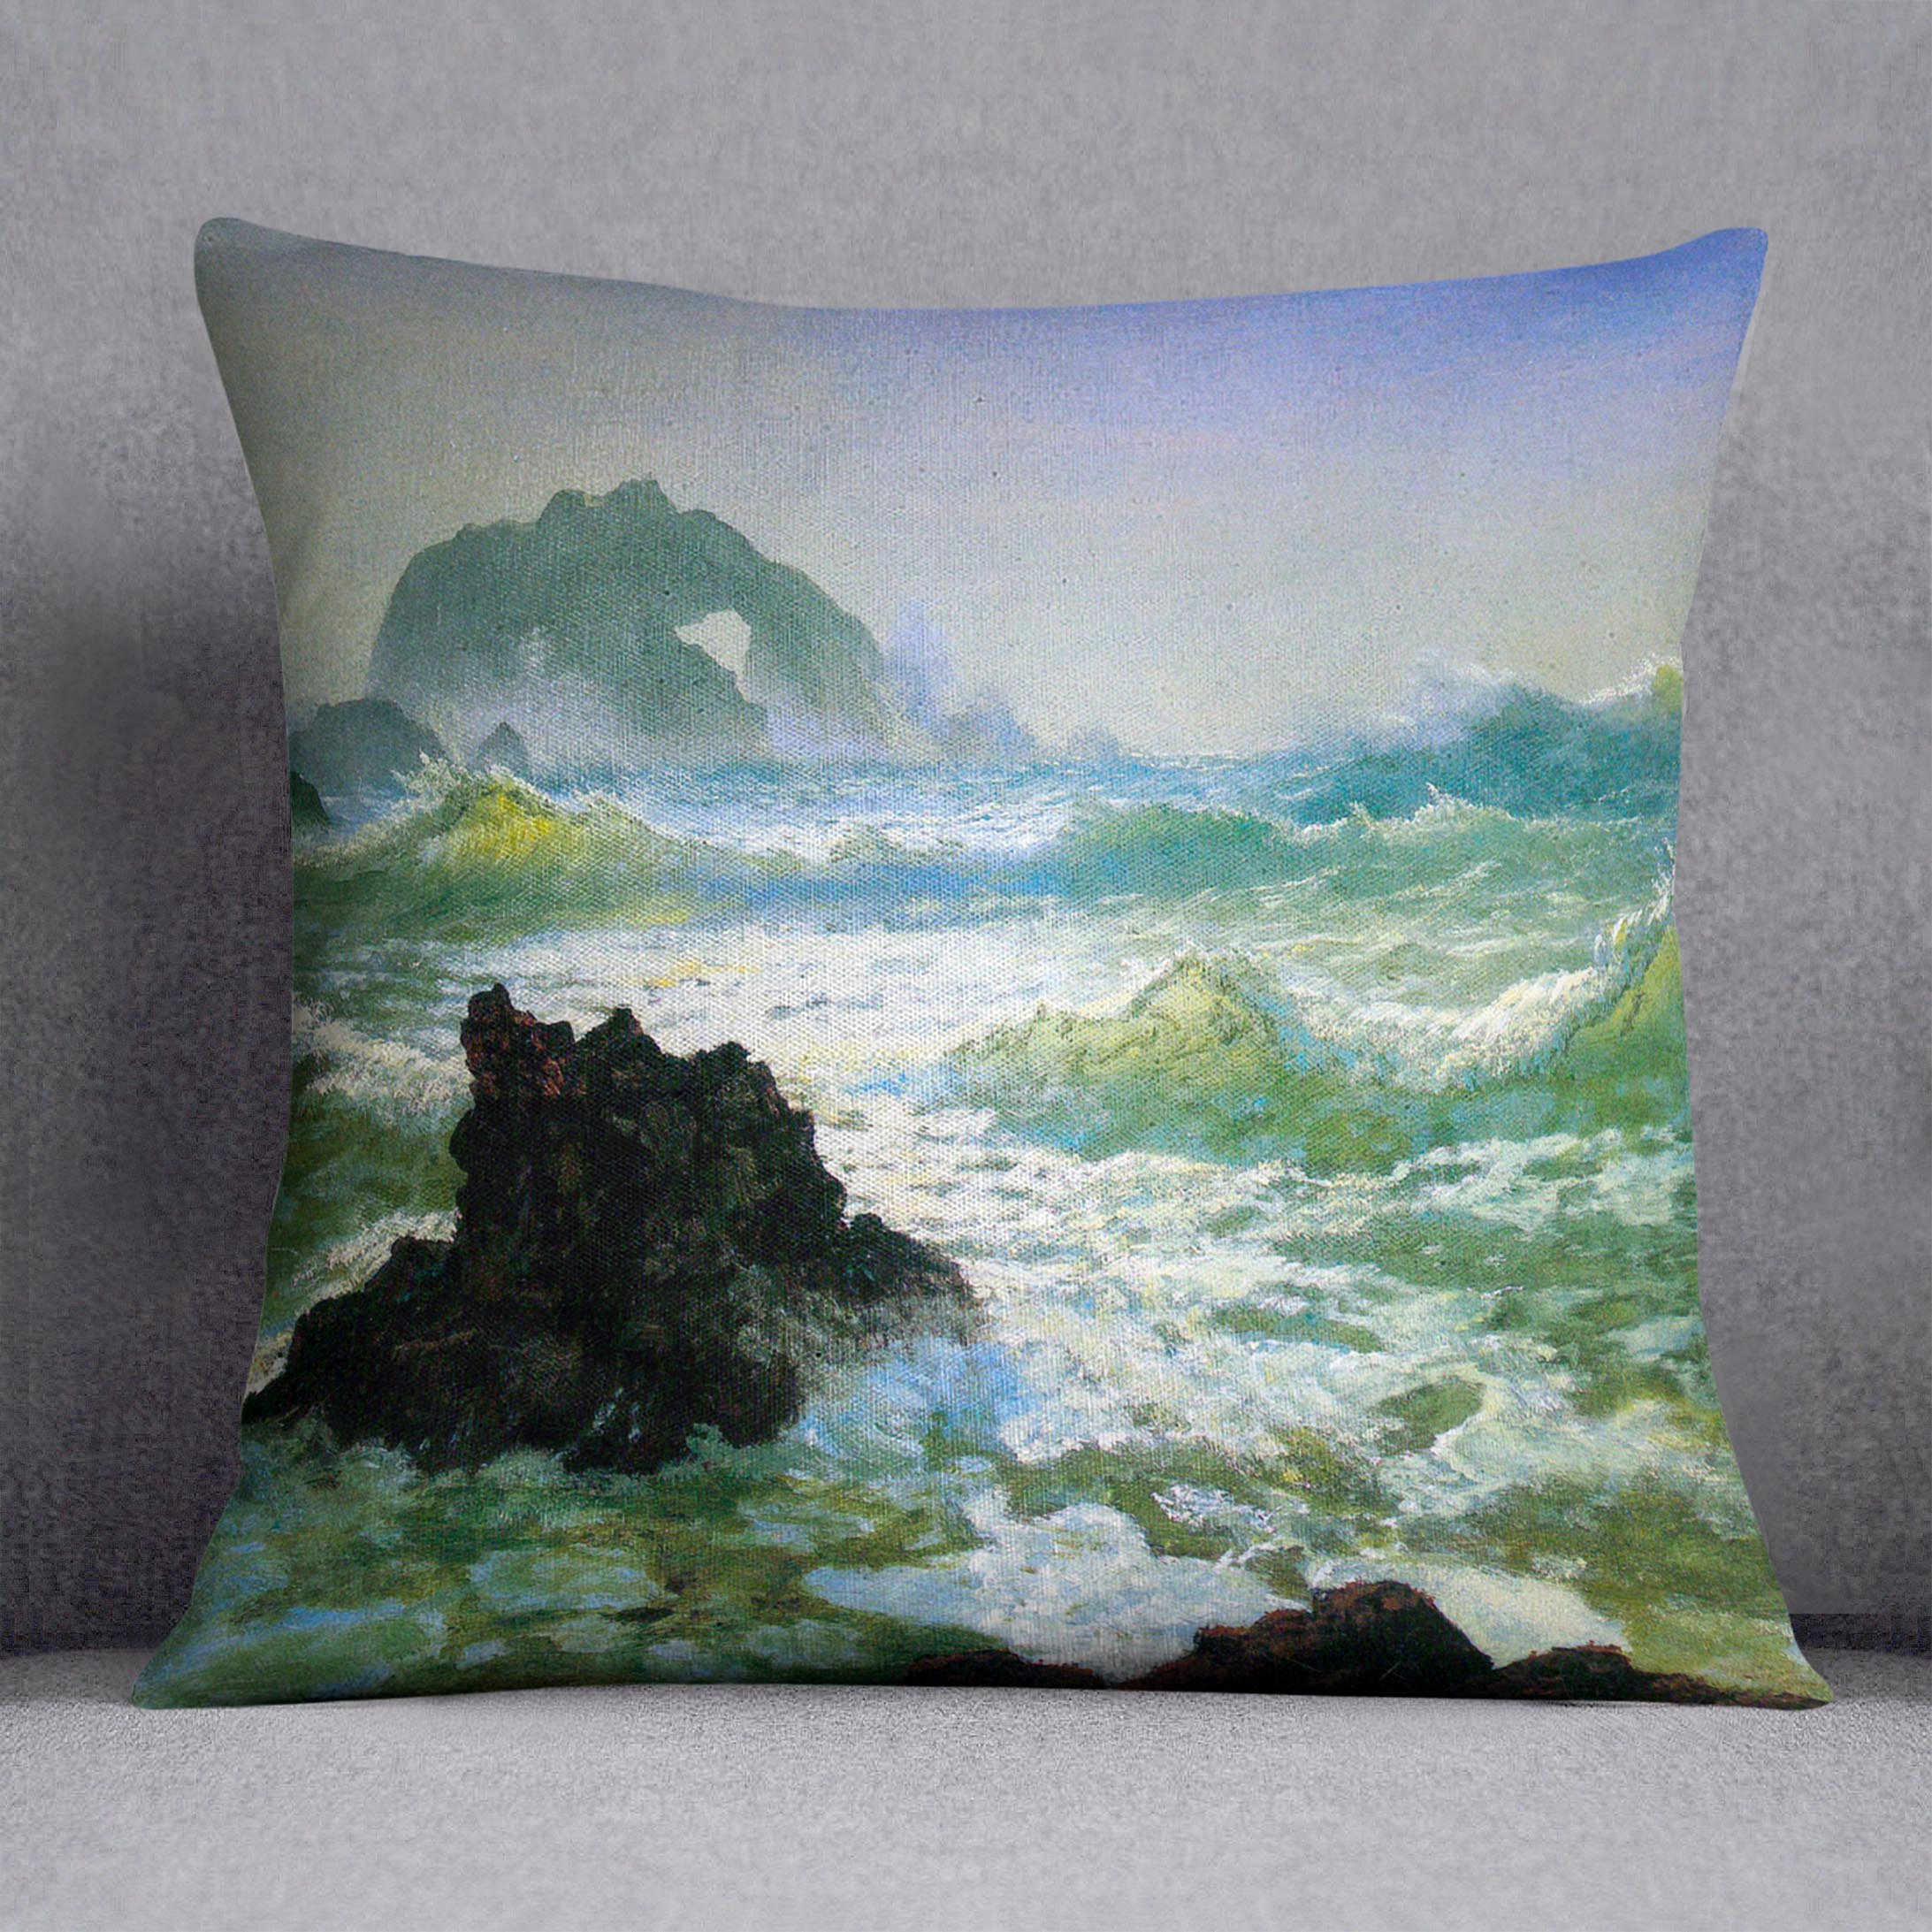 Seal Rock 2 by Bierstadt Cushion - Canvas Art Rocks - 1